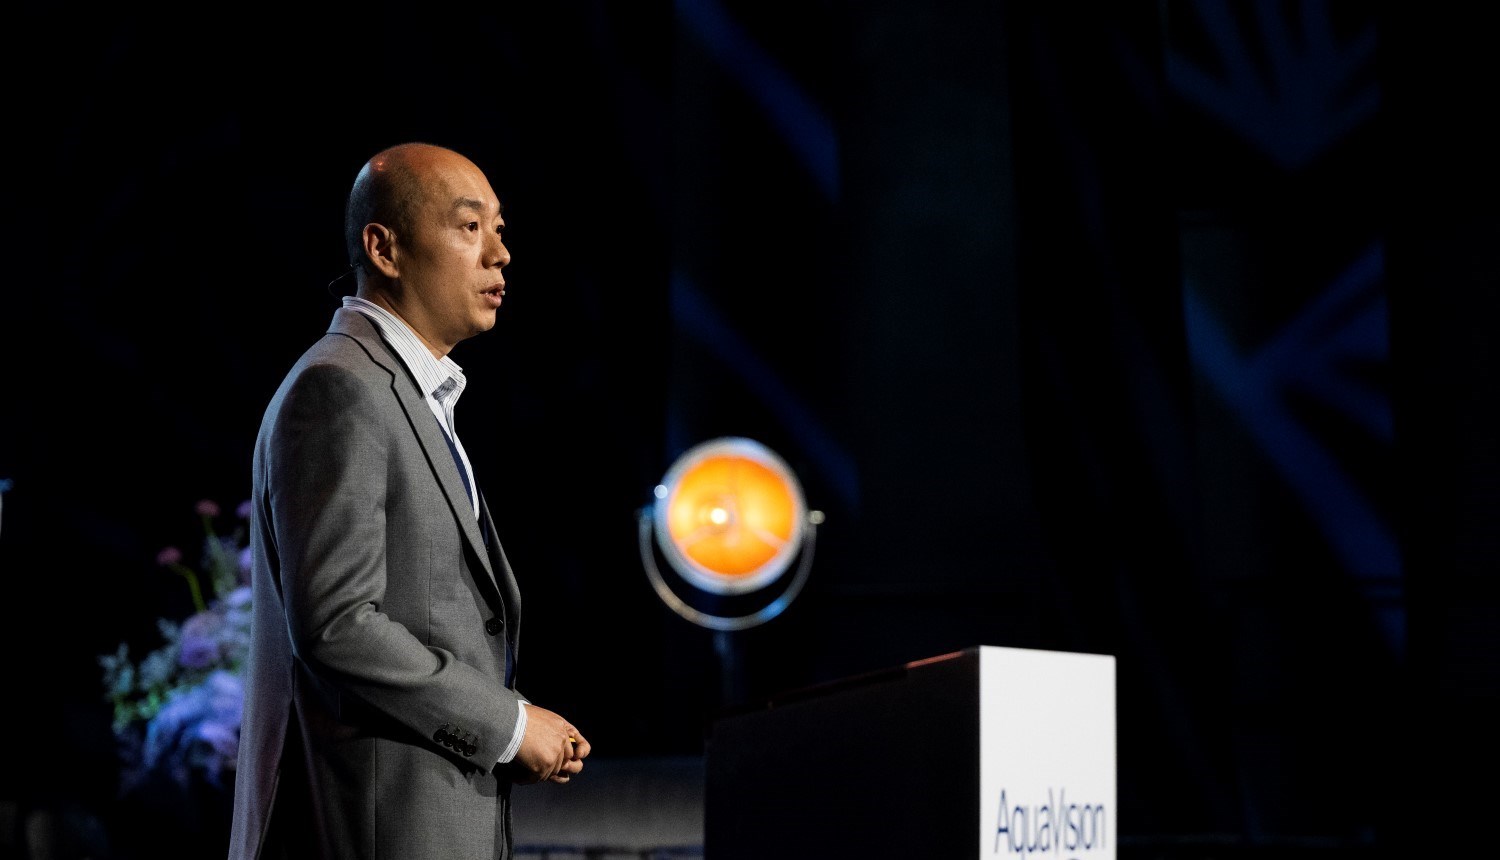 Jason Yang, General Manager at Nutreco China